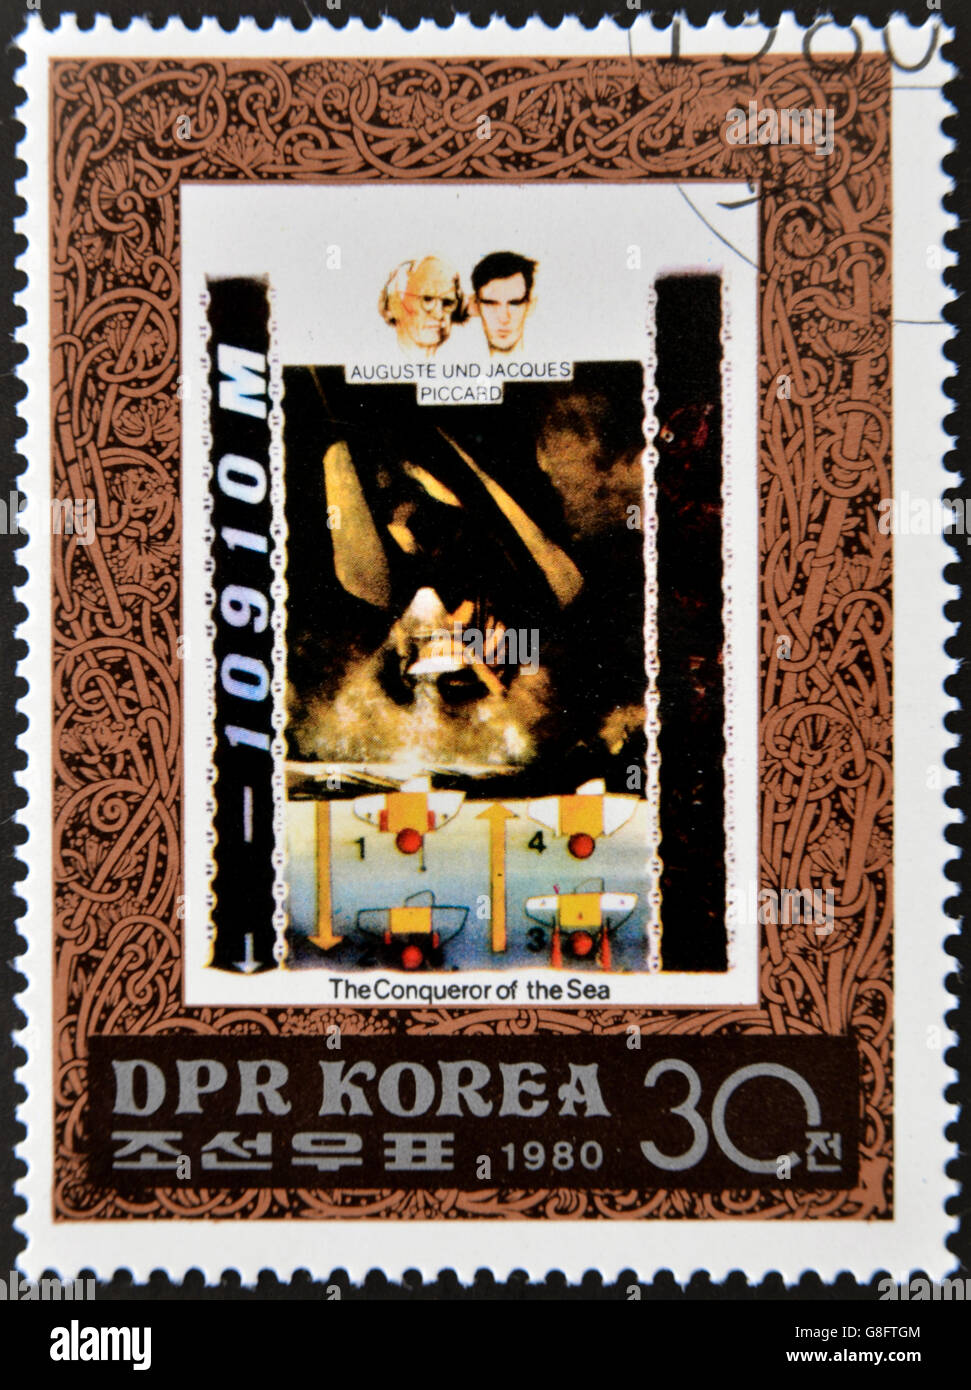 République populaire démocratique de Corée (RPD) - vers 1980 : un timbre imprimé en Corée du Nord montre Auguste et Jacques Piccard, un Banque D'Images